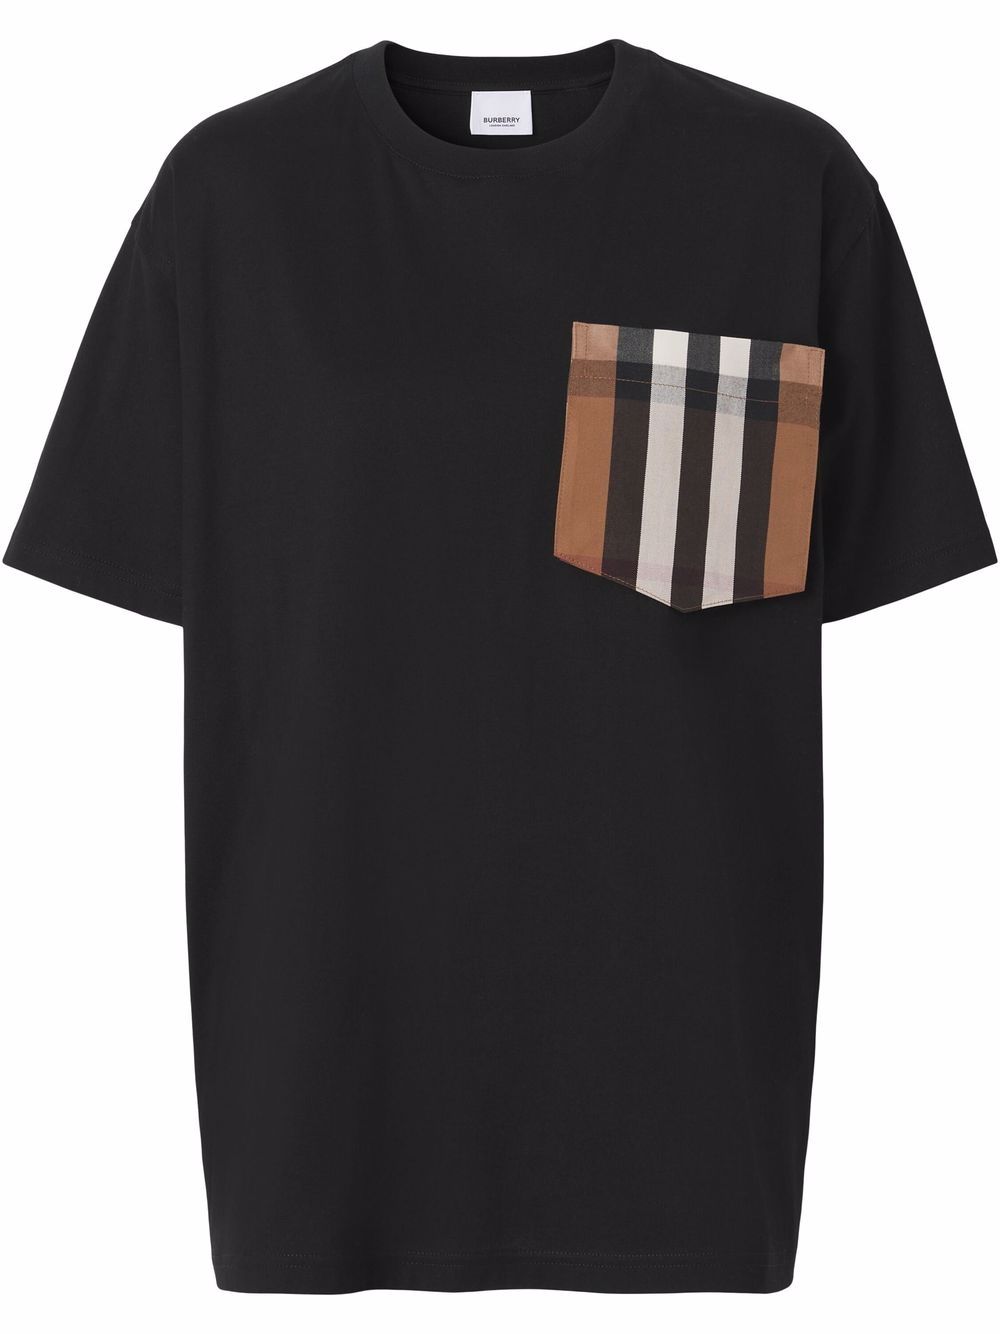 Burberry T-Shirt mit karierter Tasche - Schwarz von Burberry